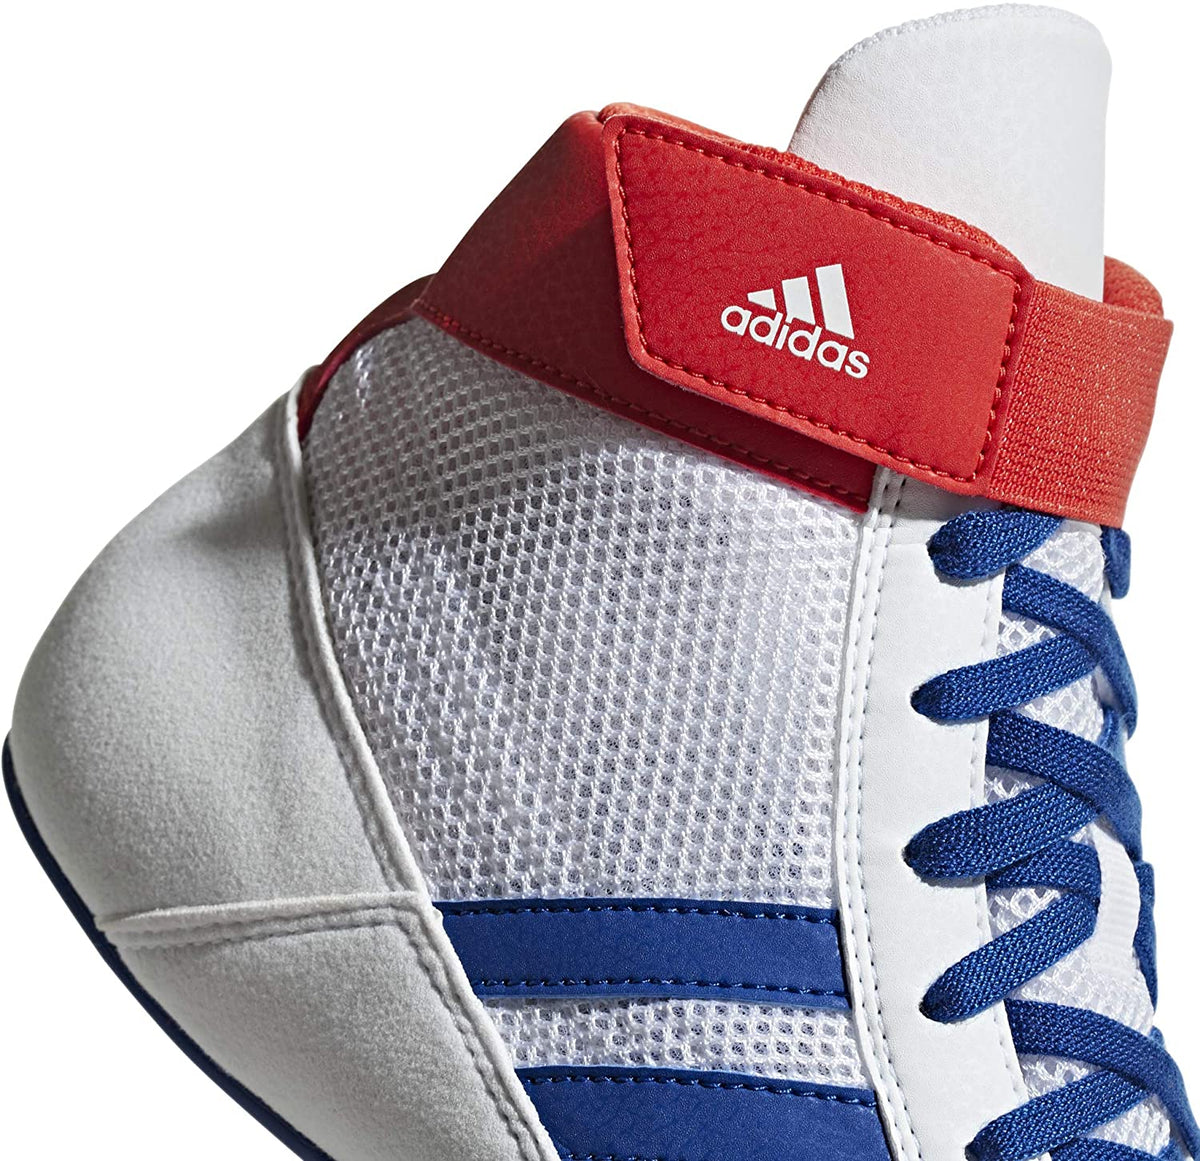 Adidas Havoc Ringerschuhe in der Farbe Weiss/Blau/Rot. Ein schlanker, minimalistischer Ringerschuh mit toller Bodenhaftung und einem extra Klettverschluss am Knöchel um die Schnürung sicher verstaut zu halten. Ideal für Training und Wettkampf.